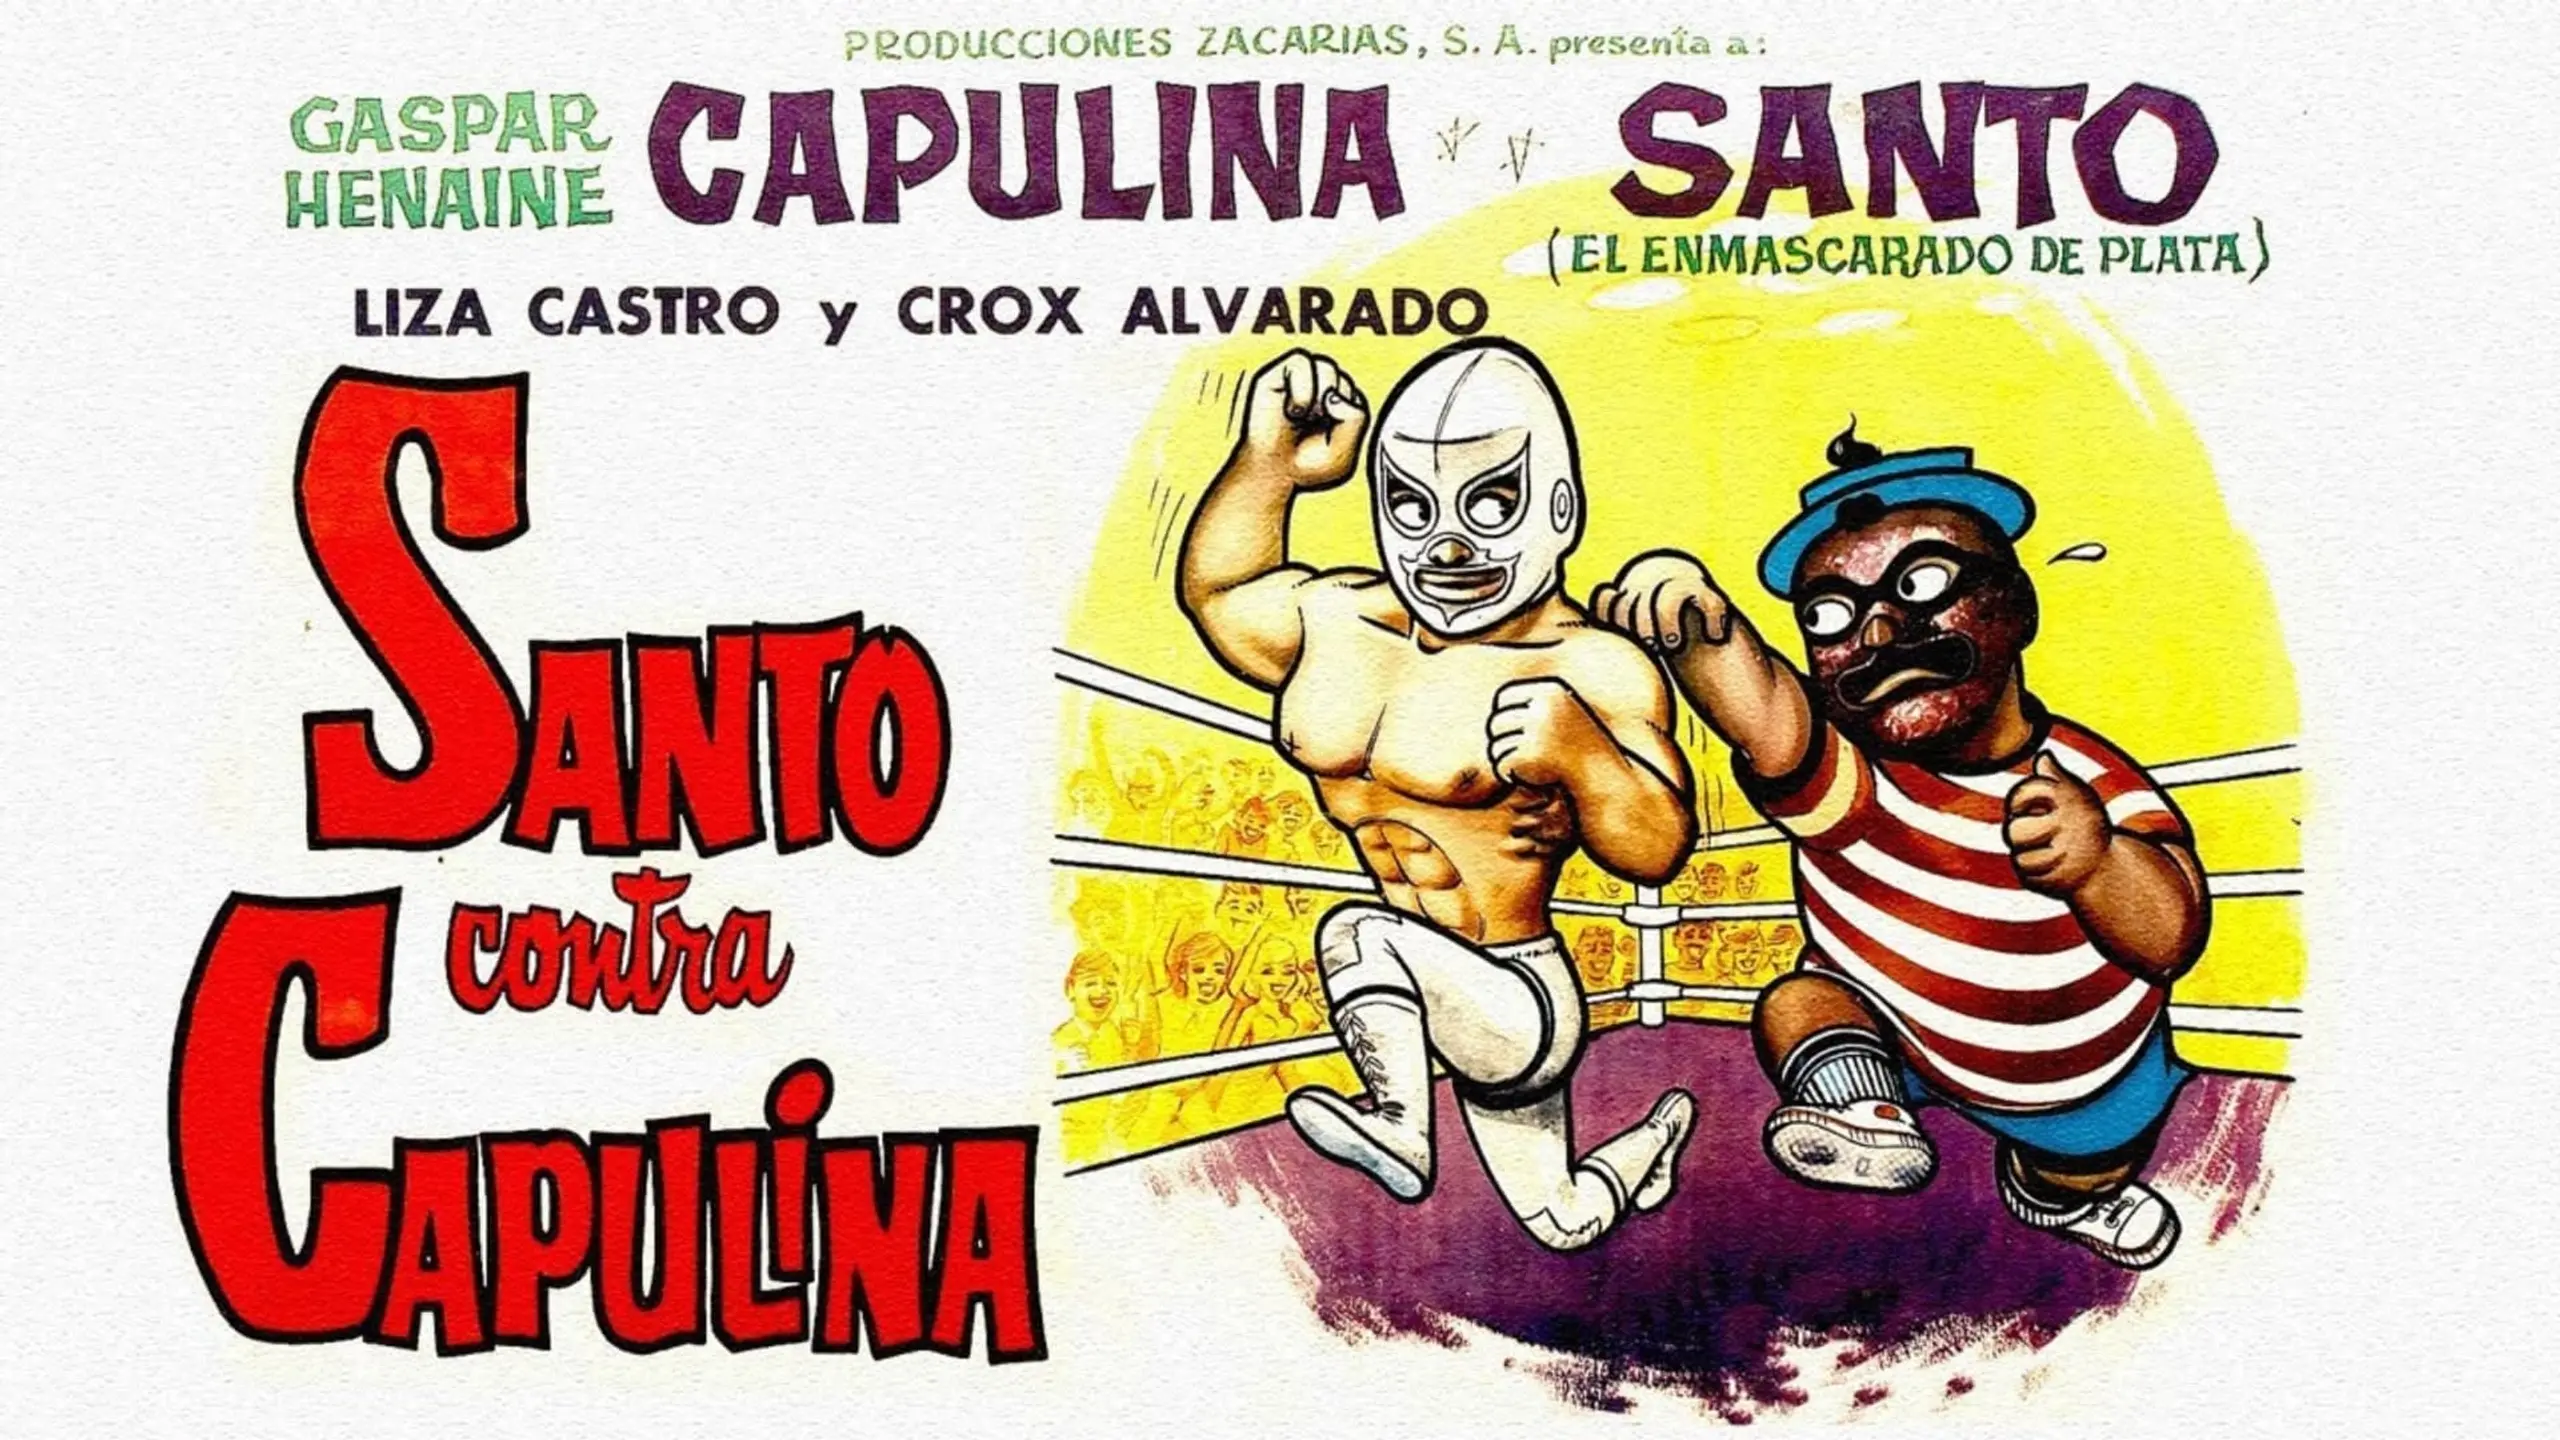 Santo vs. Capulina